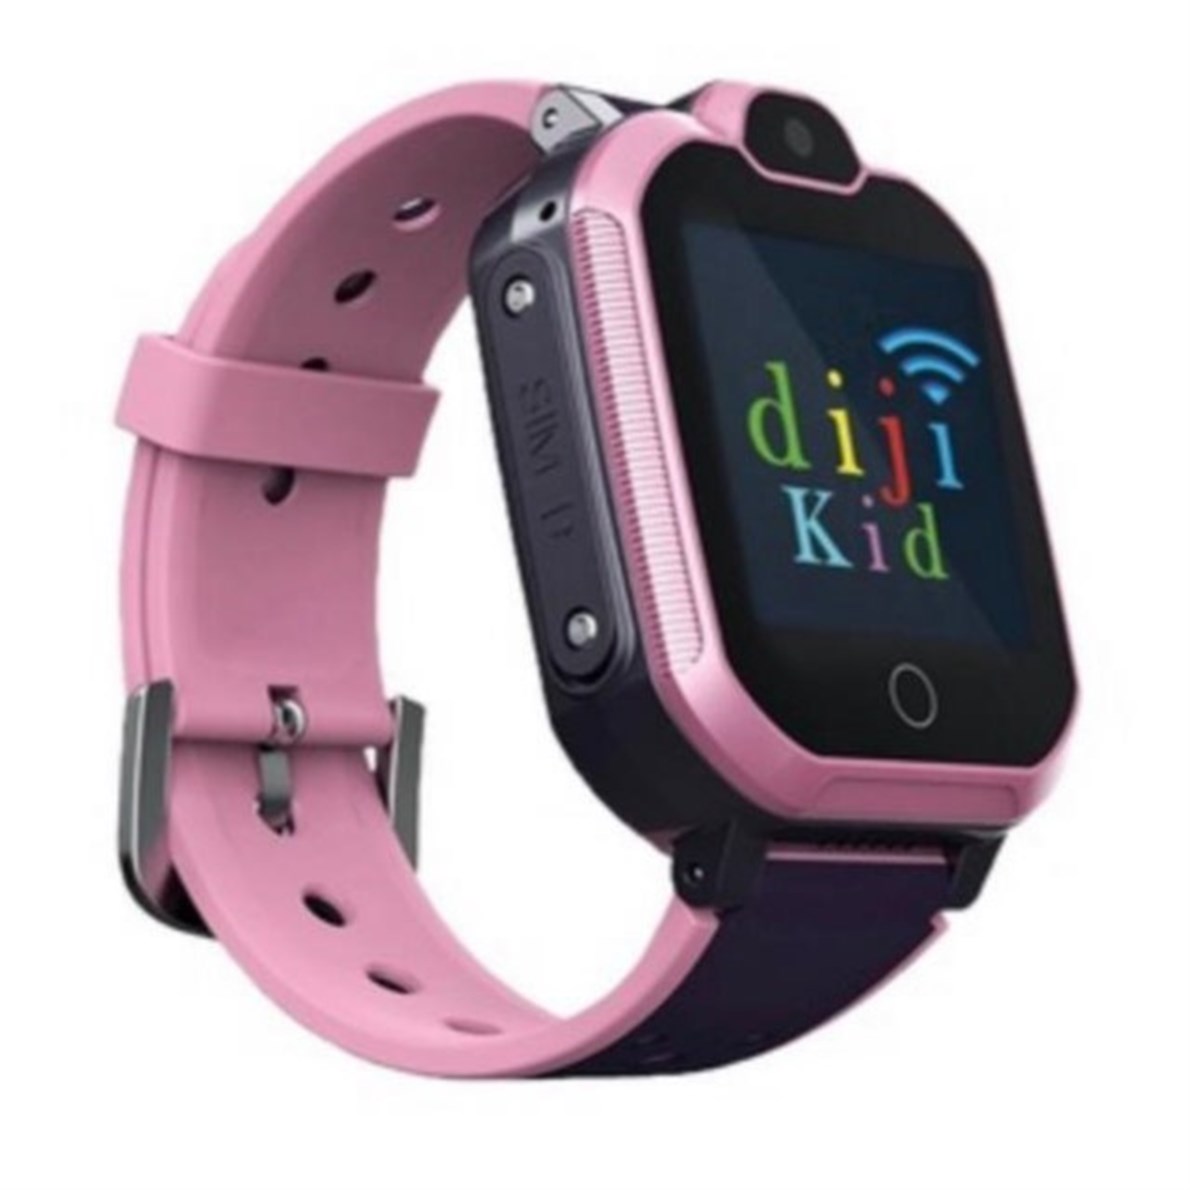 Dijikid 4G+ Çok Fonksiyonlu Akıllı Çocuk Saati-Görüntülü Görüşme-GPS-Suya  Dayanıklı-Bluetooth-Dinleme | Ereyon